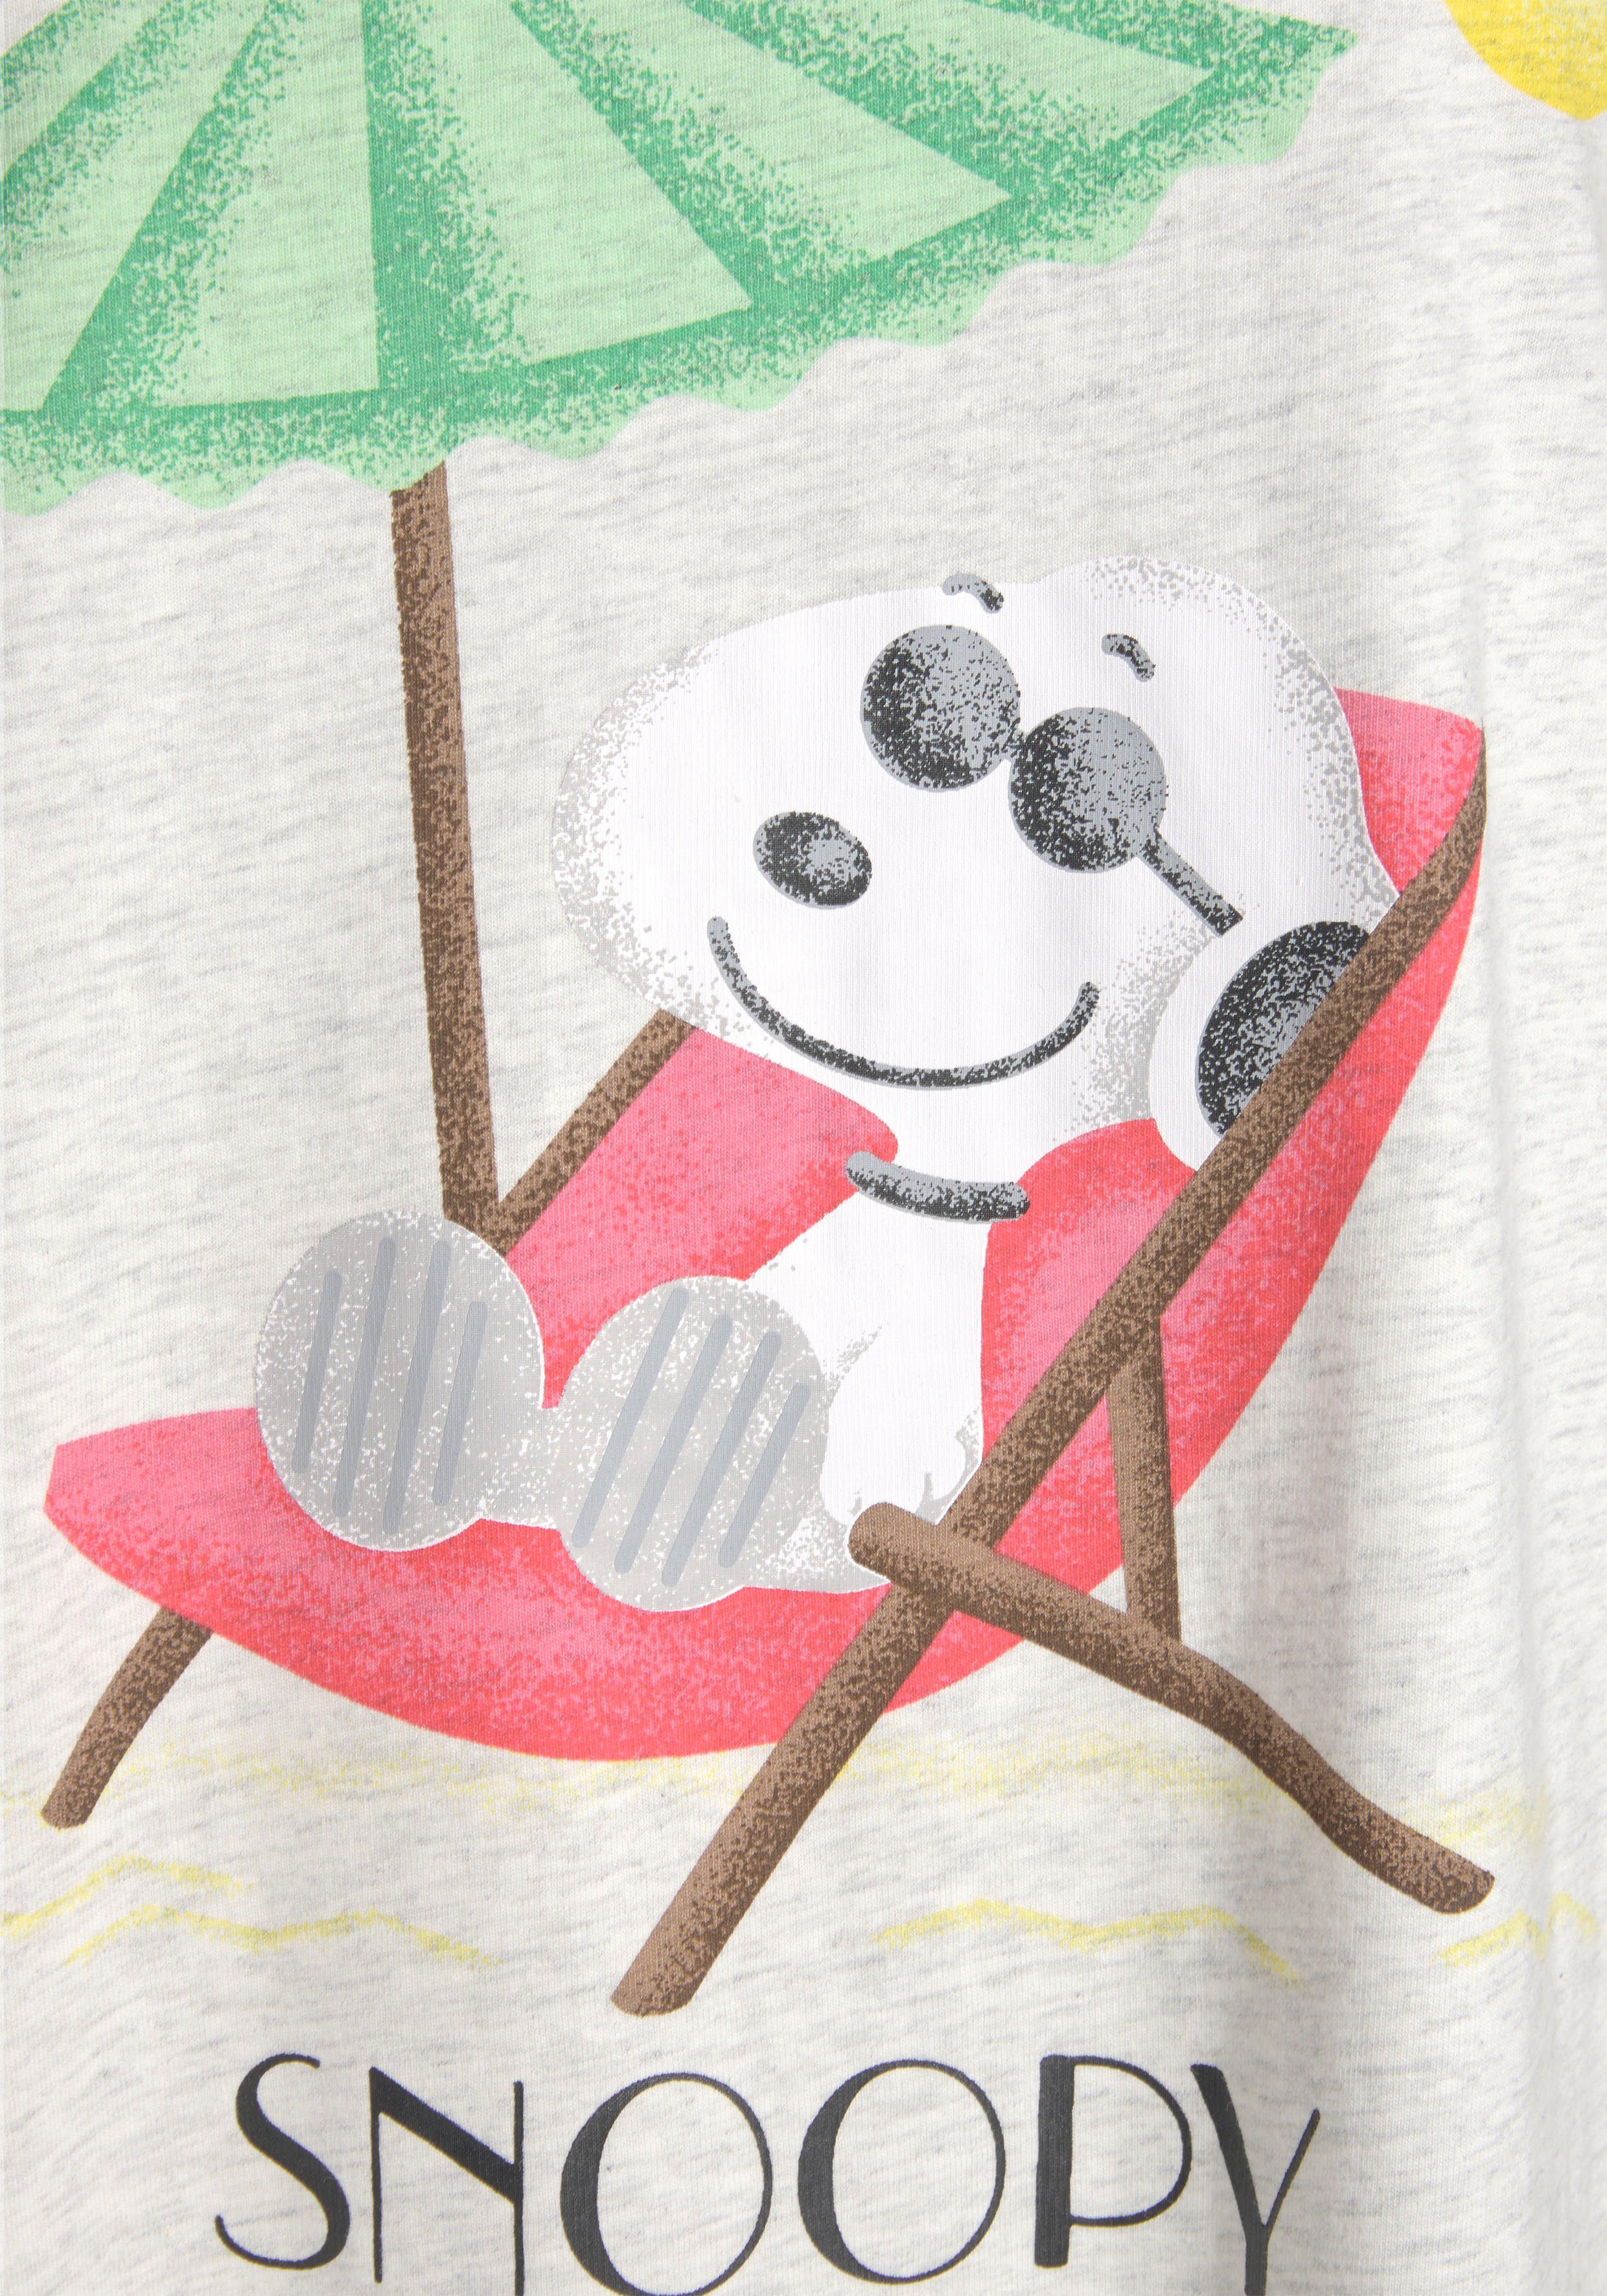 PEANUTS Sleepshirt mit Snoopy-Druck zum Wohlfühlen